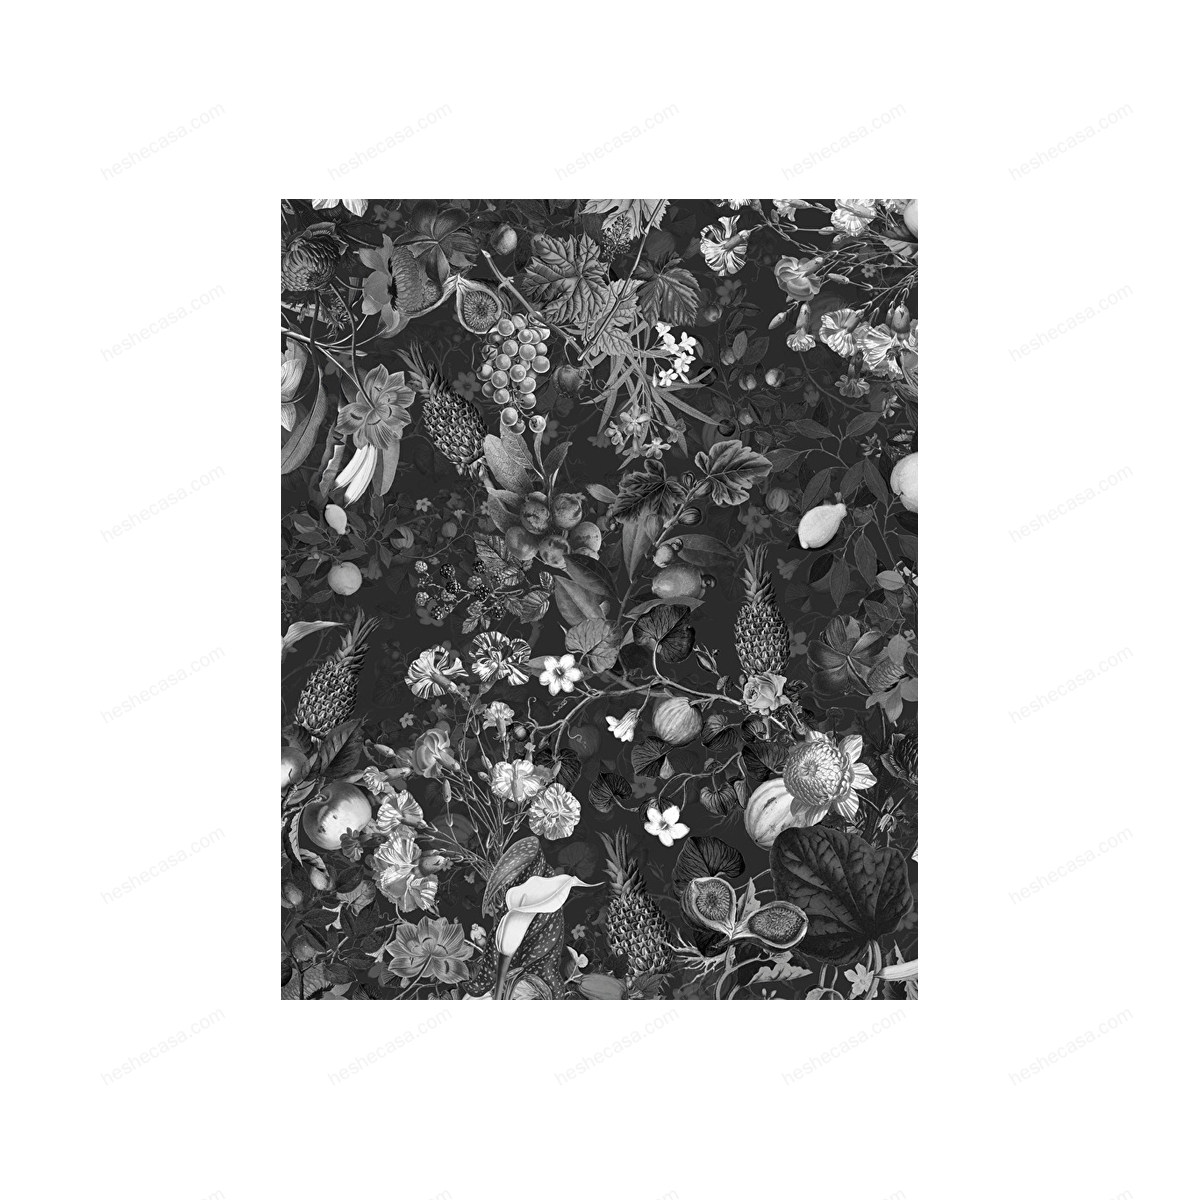 Botanica Black&White Wallpaper壁纸